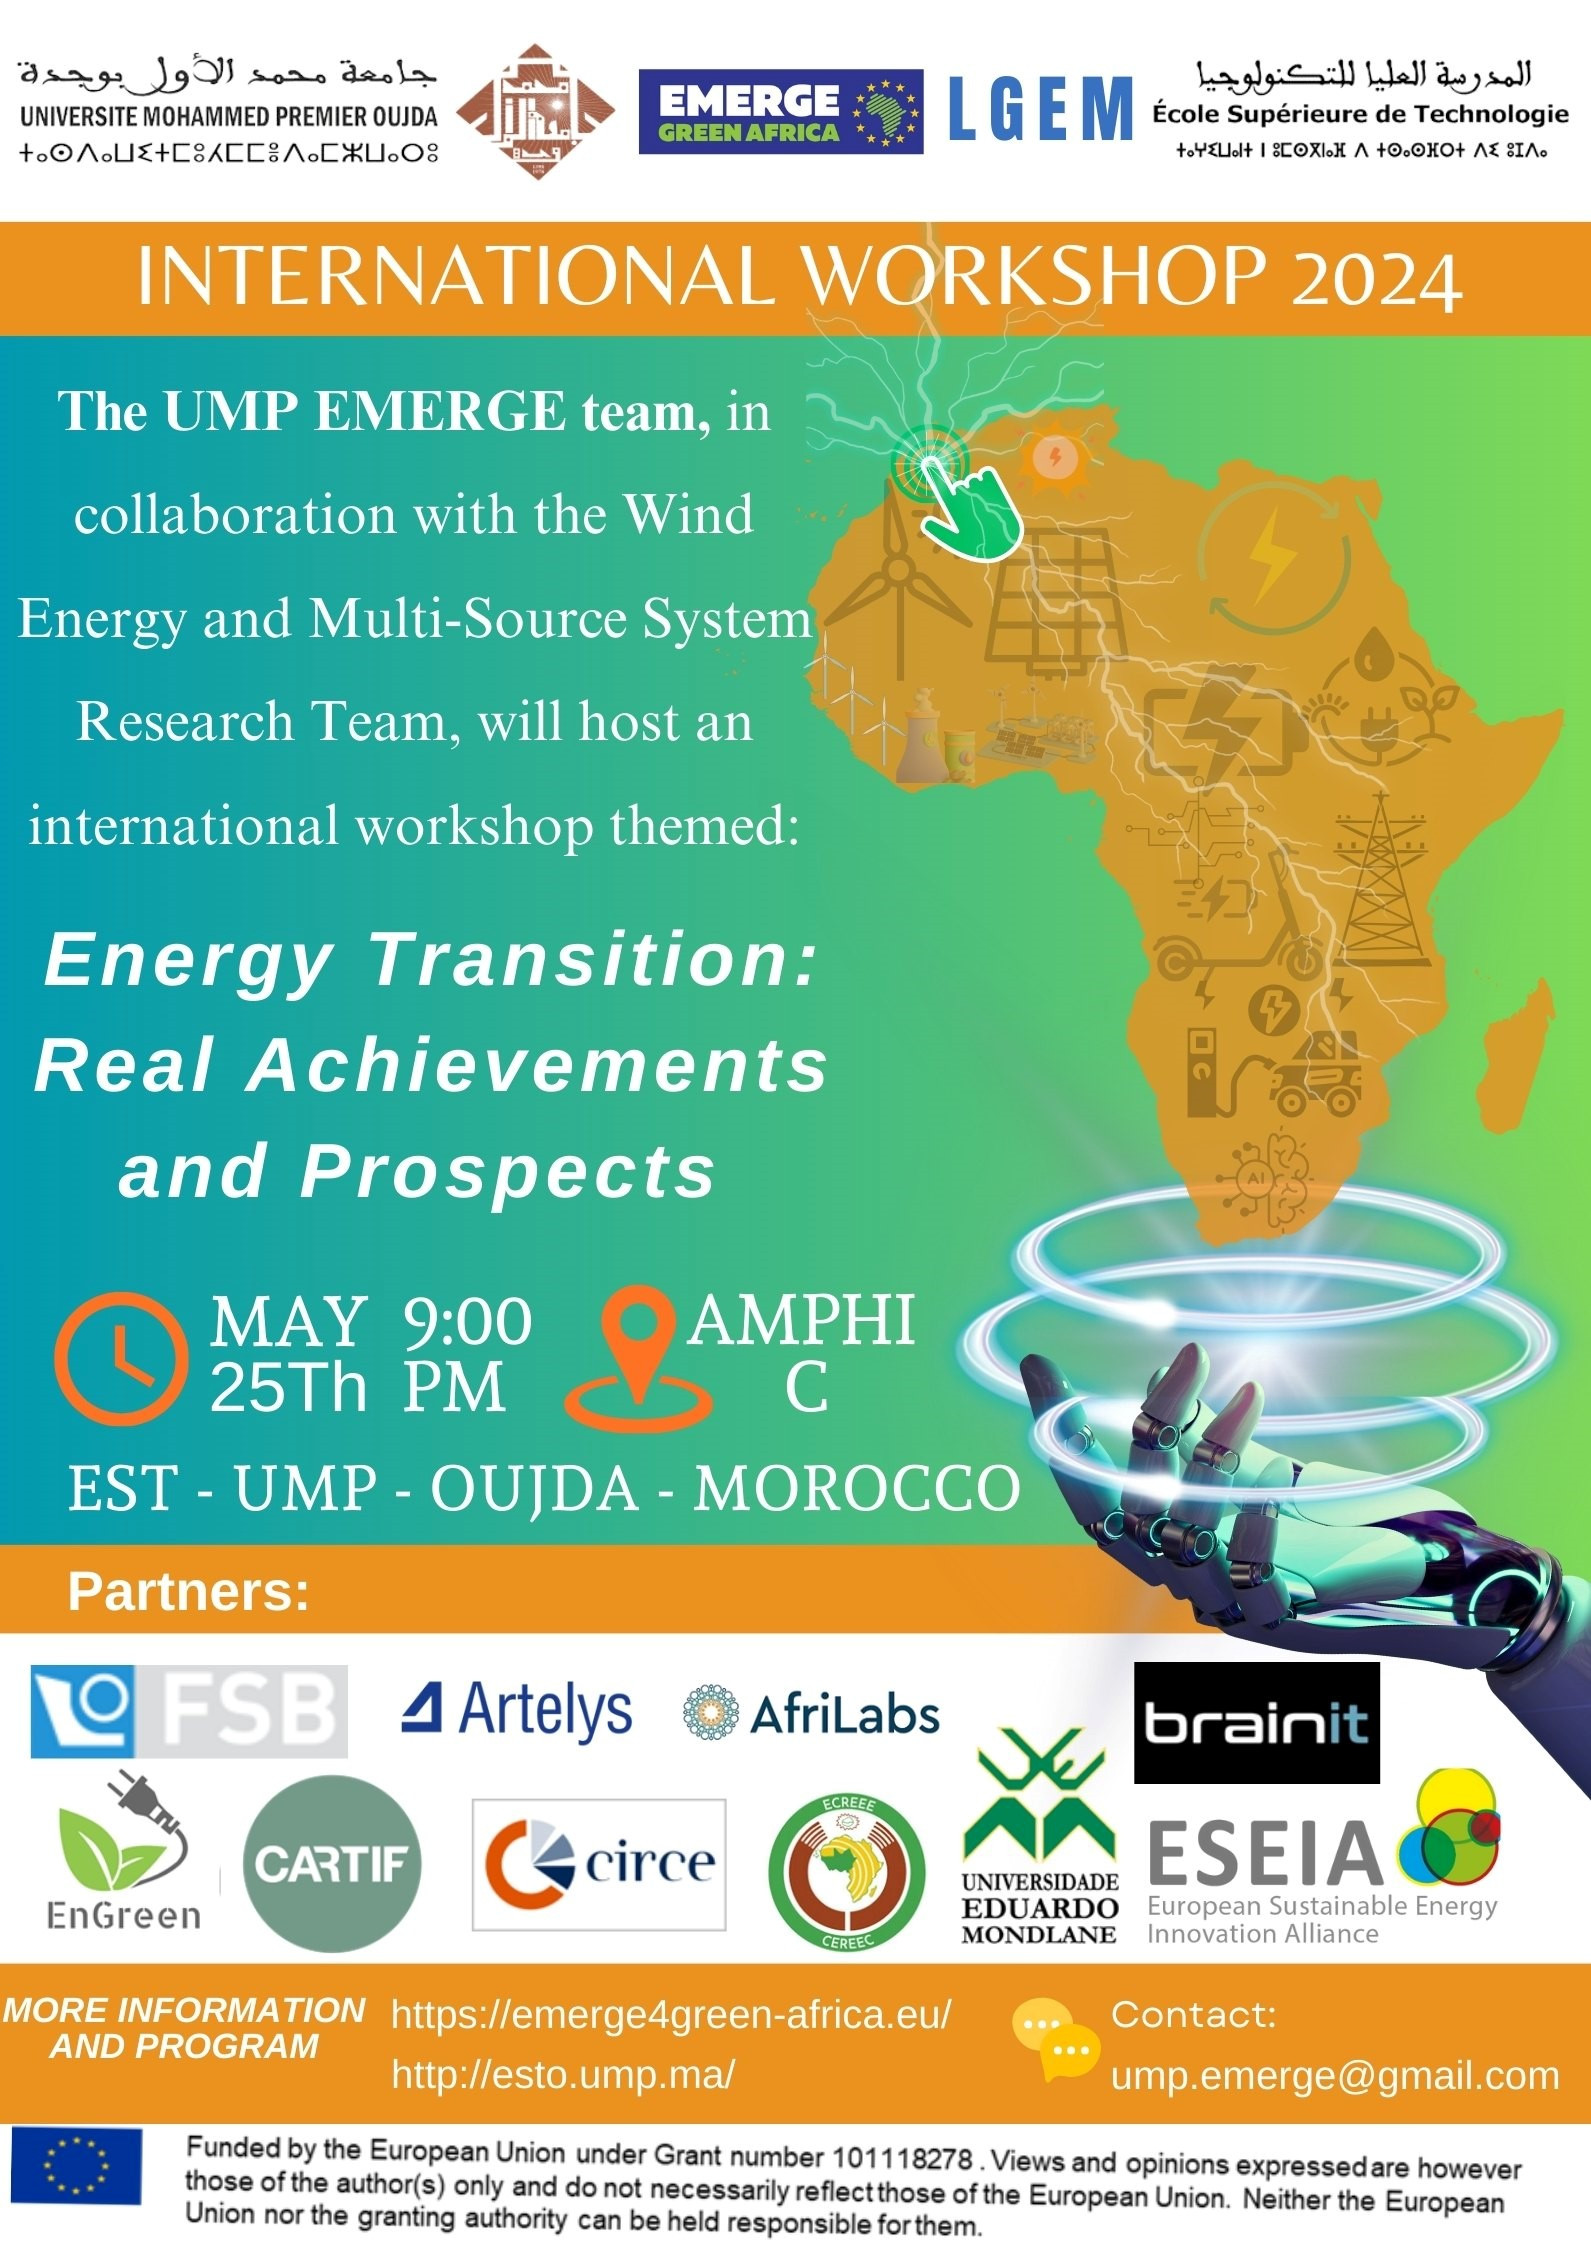 Premier workshop international sur la transition énergétique au Maroc ! L’équipe UMP du projet Emerge et le laboratoire LGEM